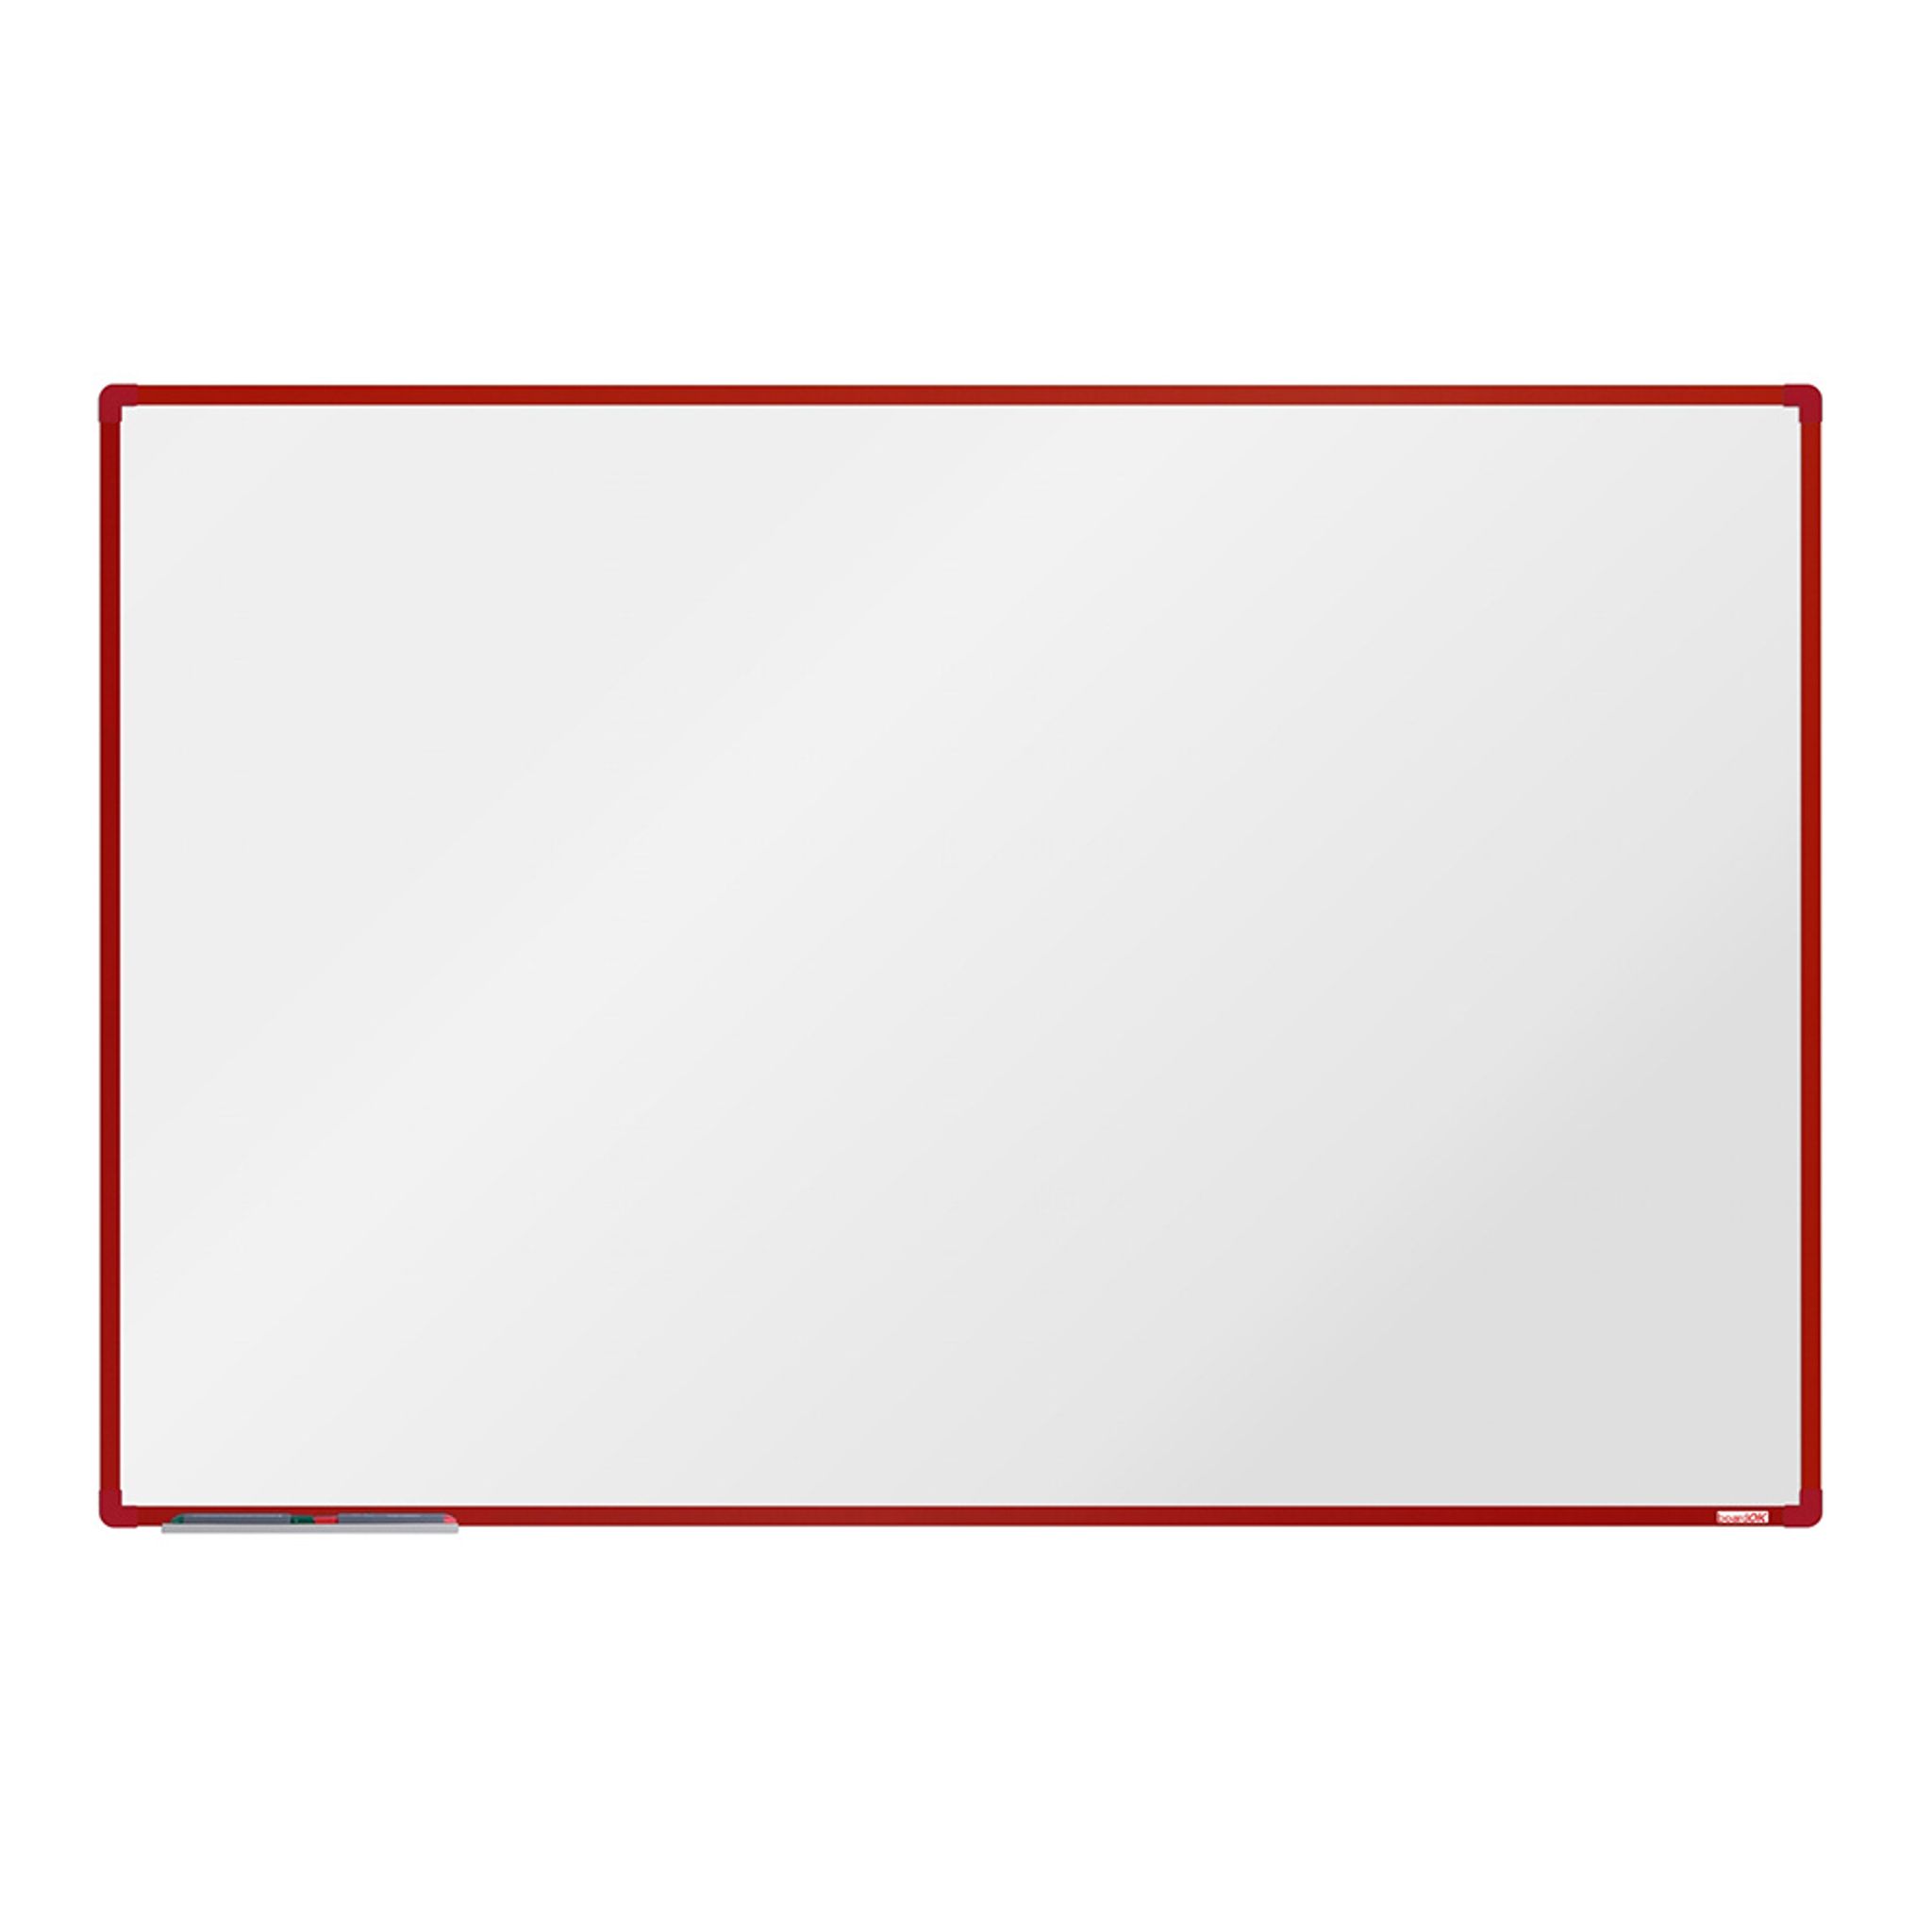 Biała magnetyczna tablica do pisania boardOK 1800 x 1200 mm, czerwona rama